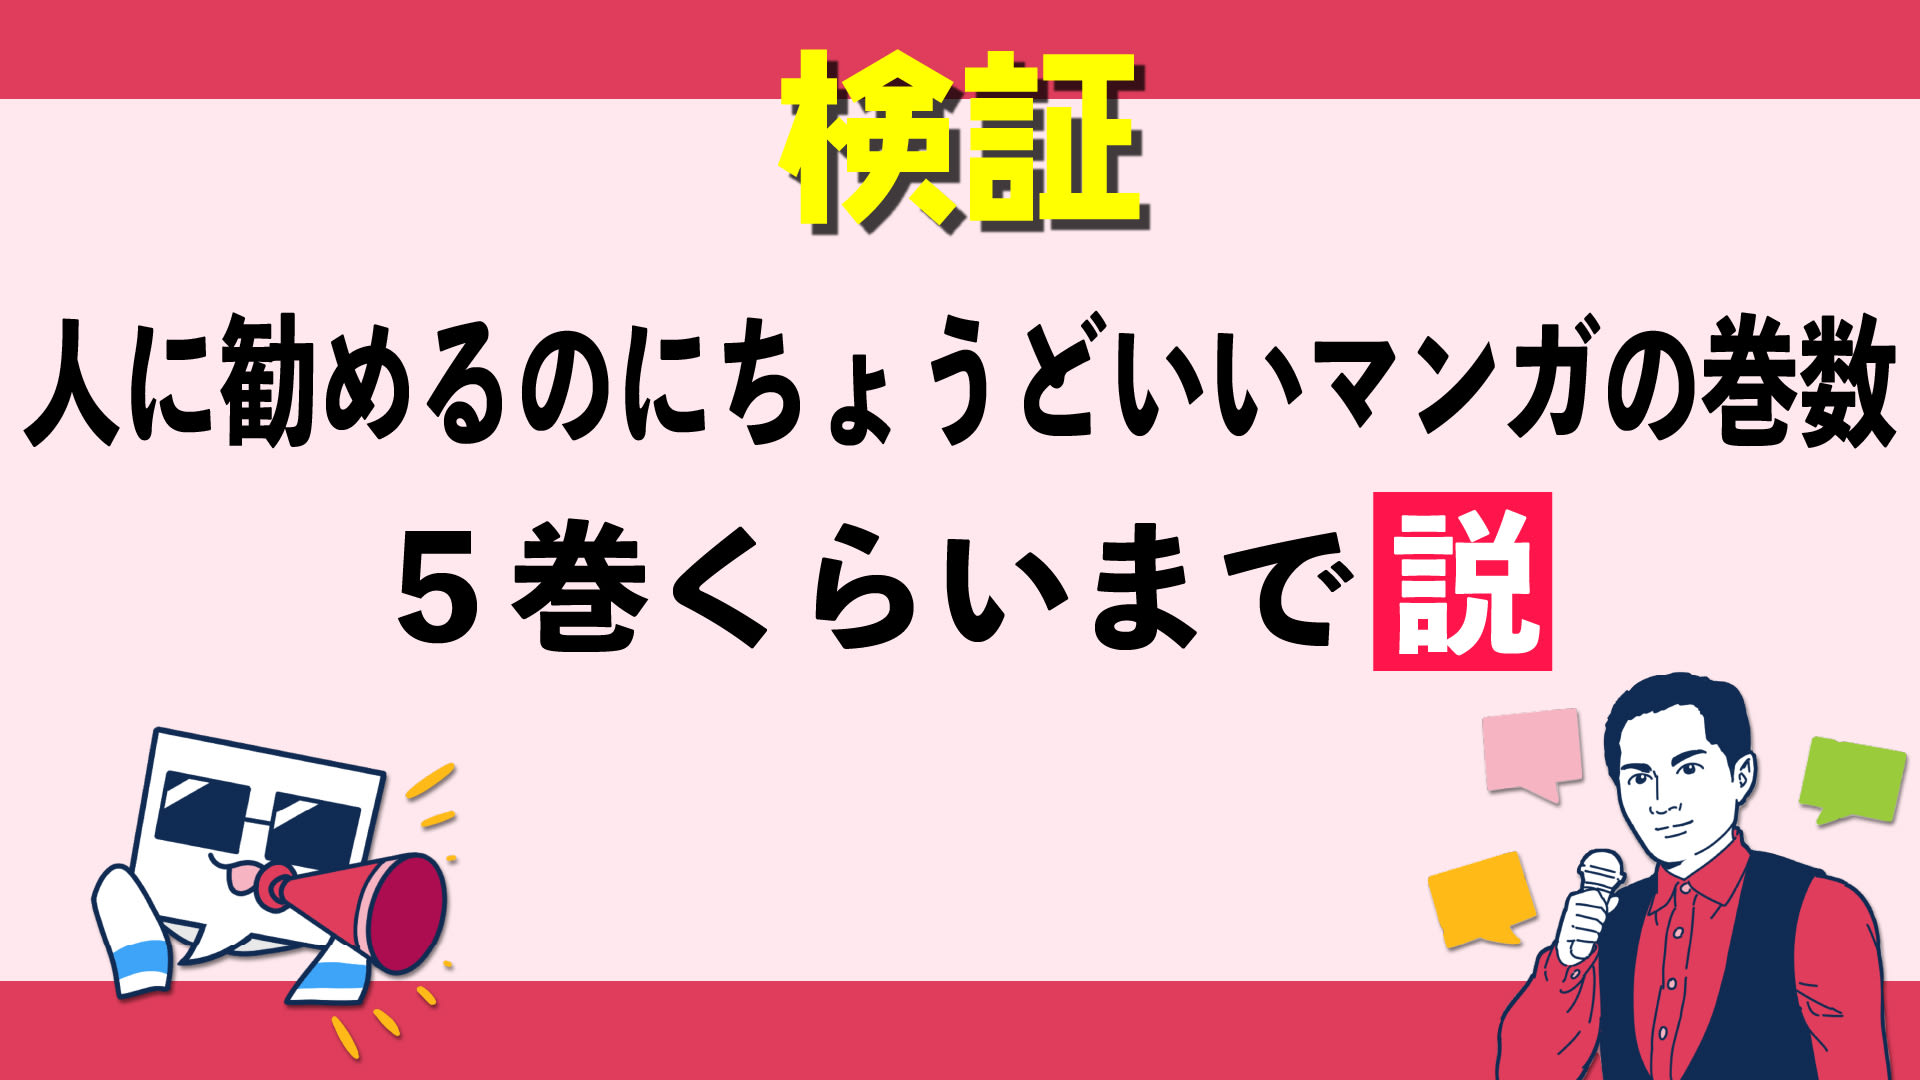 2022年3月25日、漫画クチコミサービス『マンバ』がマンガソムリエ・兎来栄寿さんとともに、お...